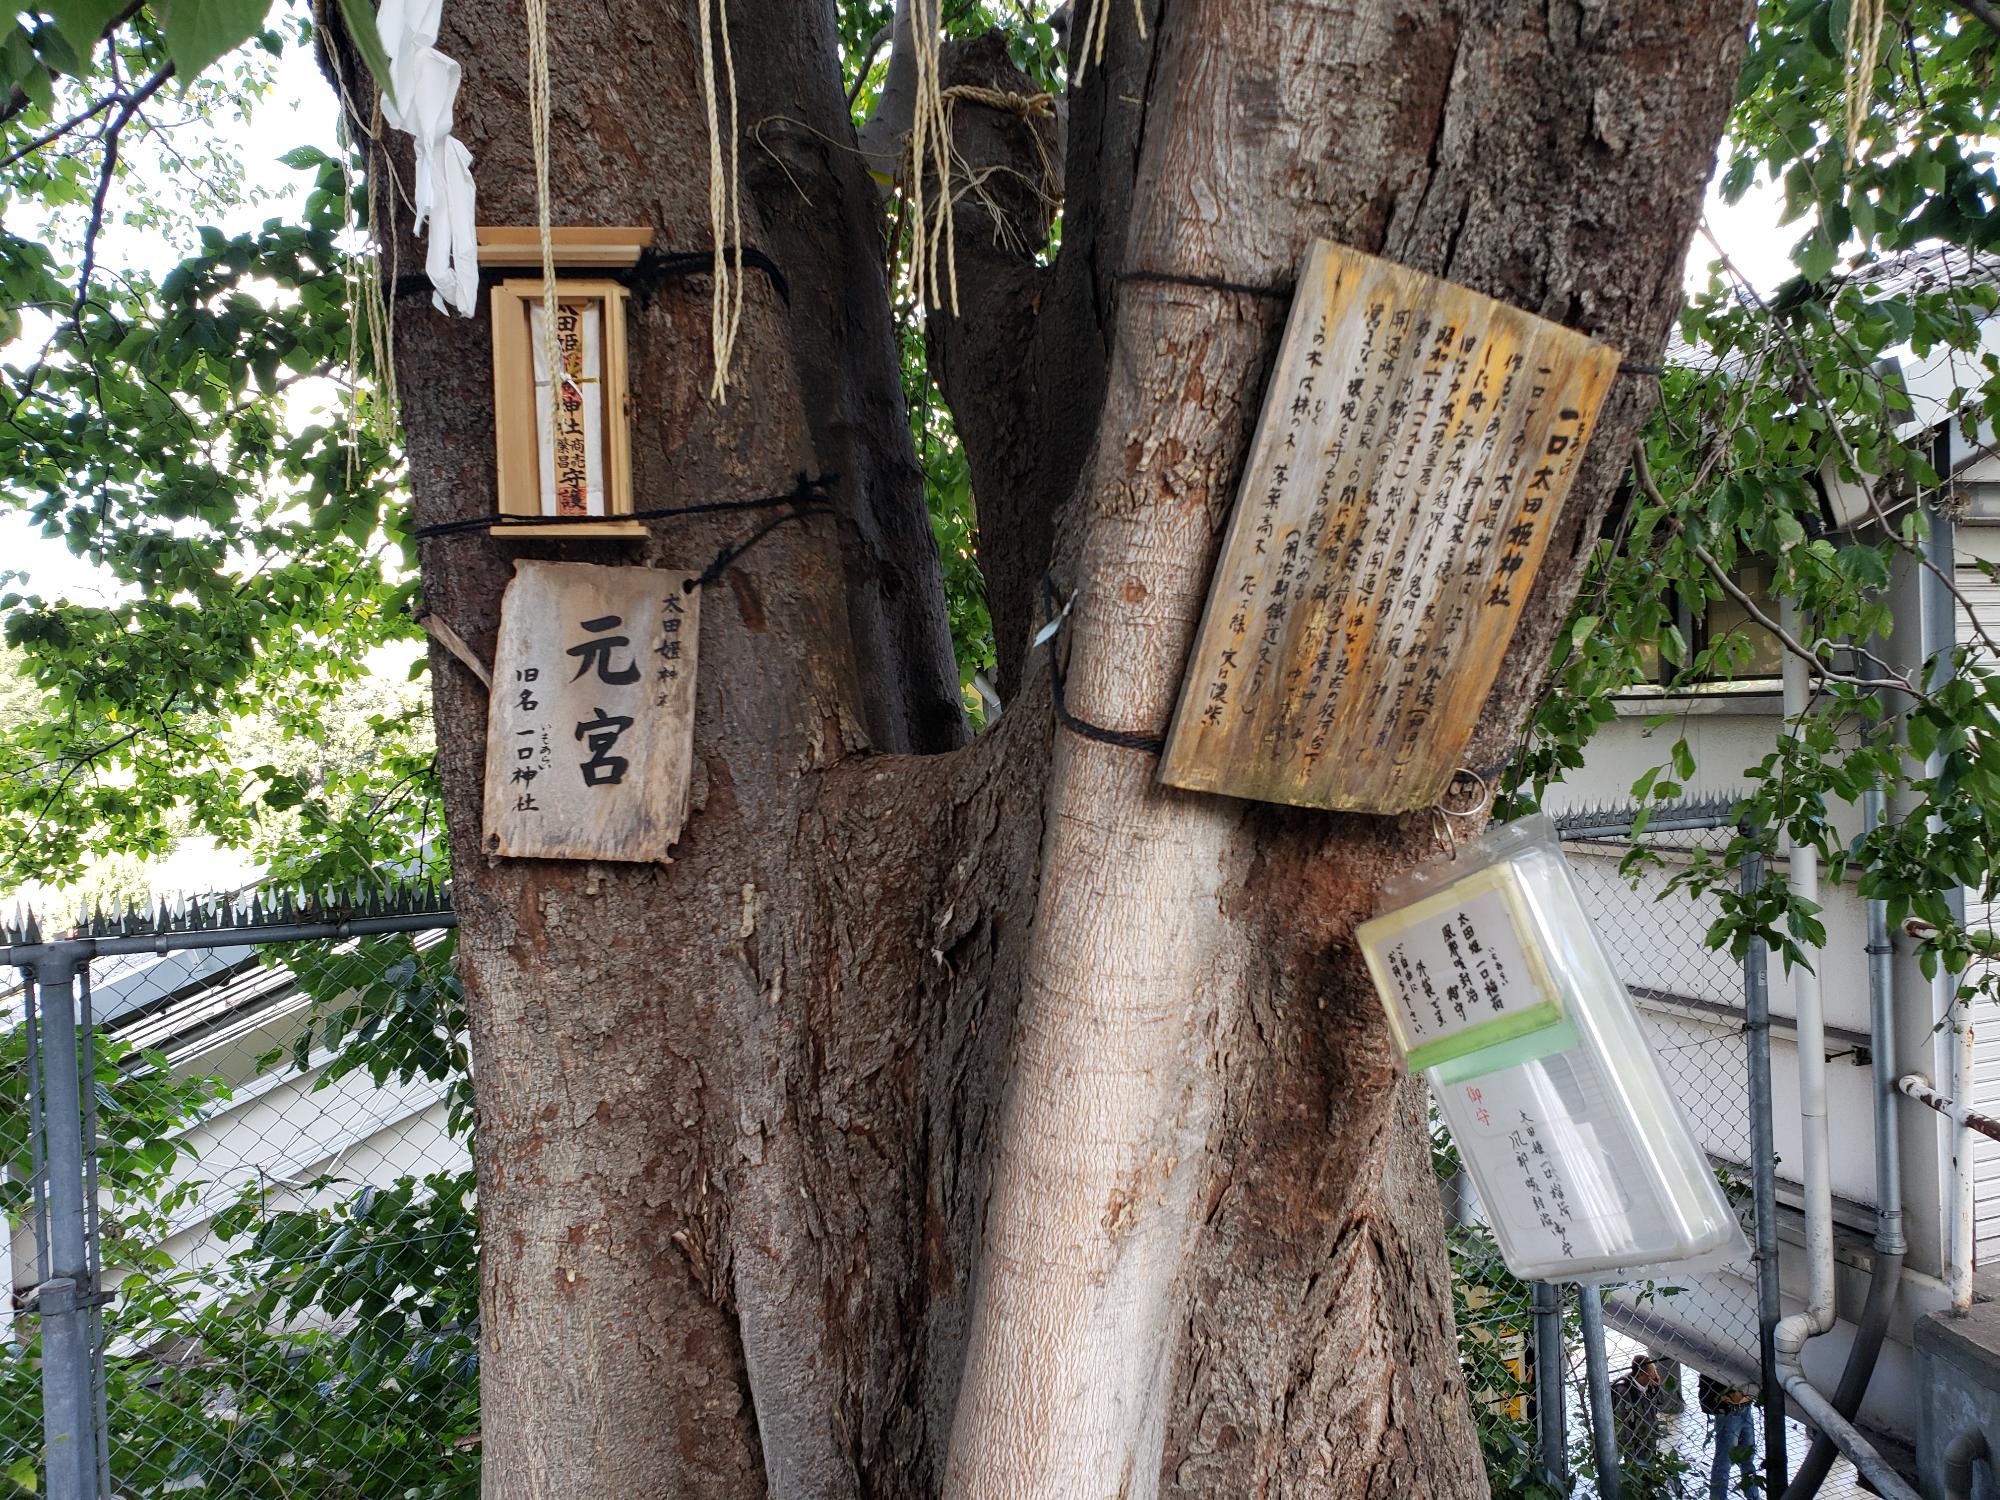 椋（むく）の大樹に下げられた「元宮」と書かれた木札をアップで写した写真